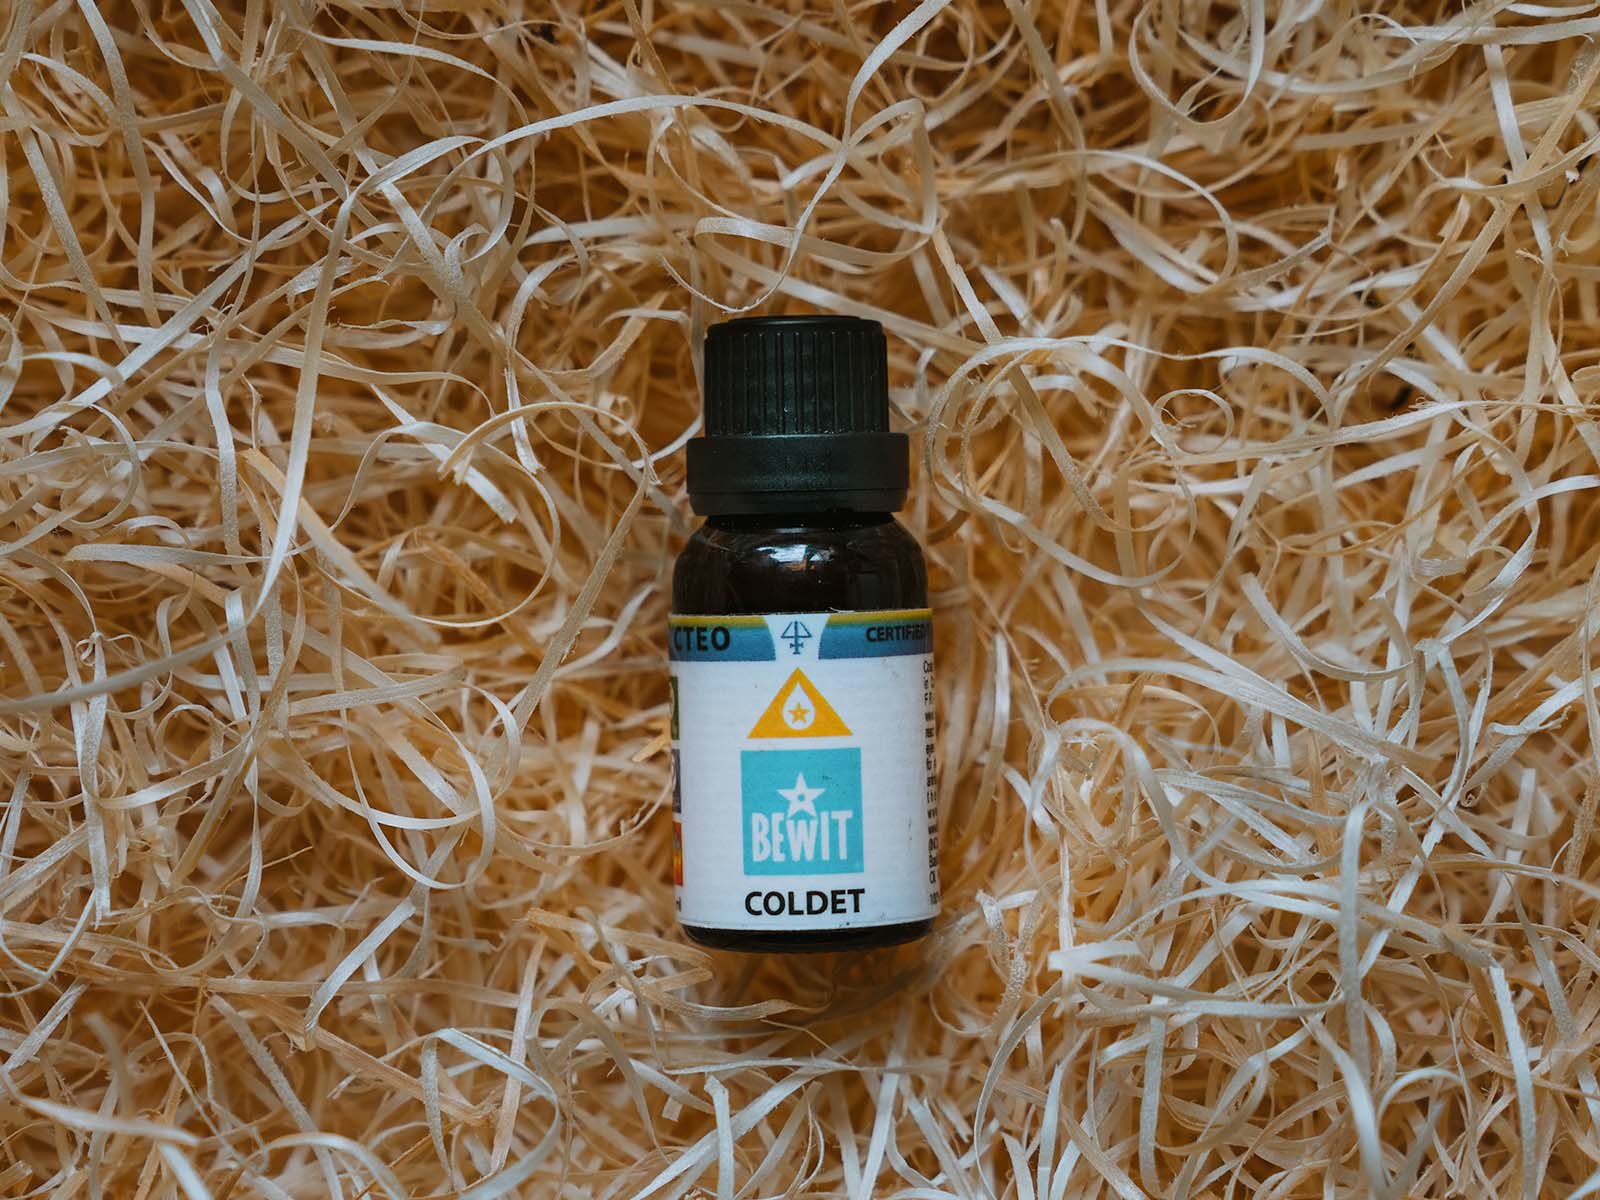 BEWIT COLDET - W 100% czysta i naturalna mieszanka olejków eterycznych w jakości CTEO® - 3